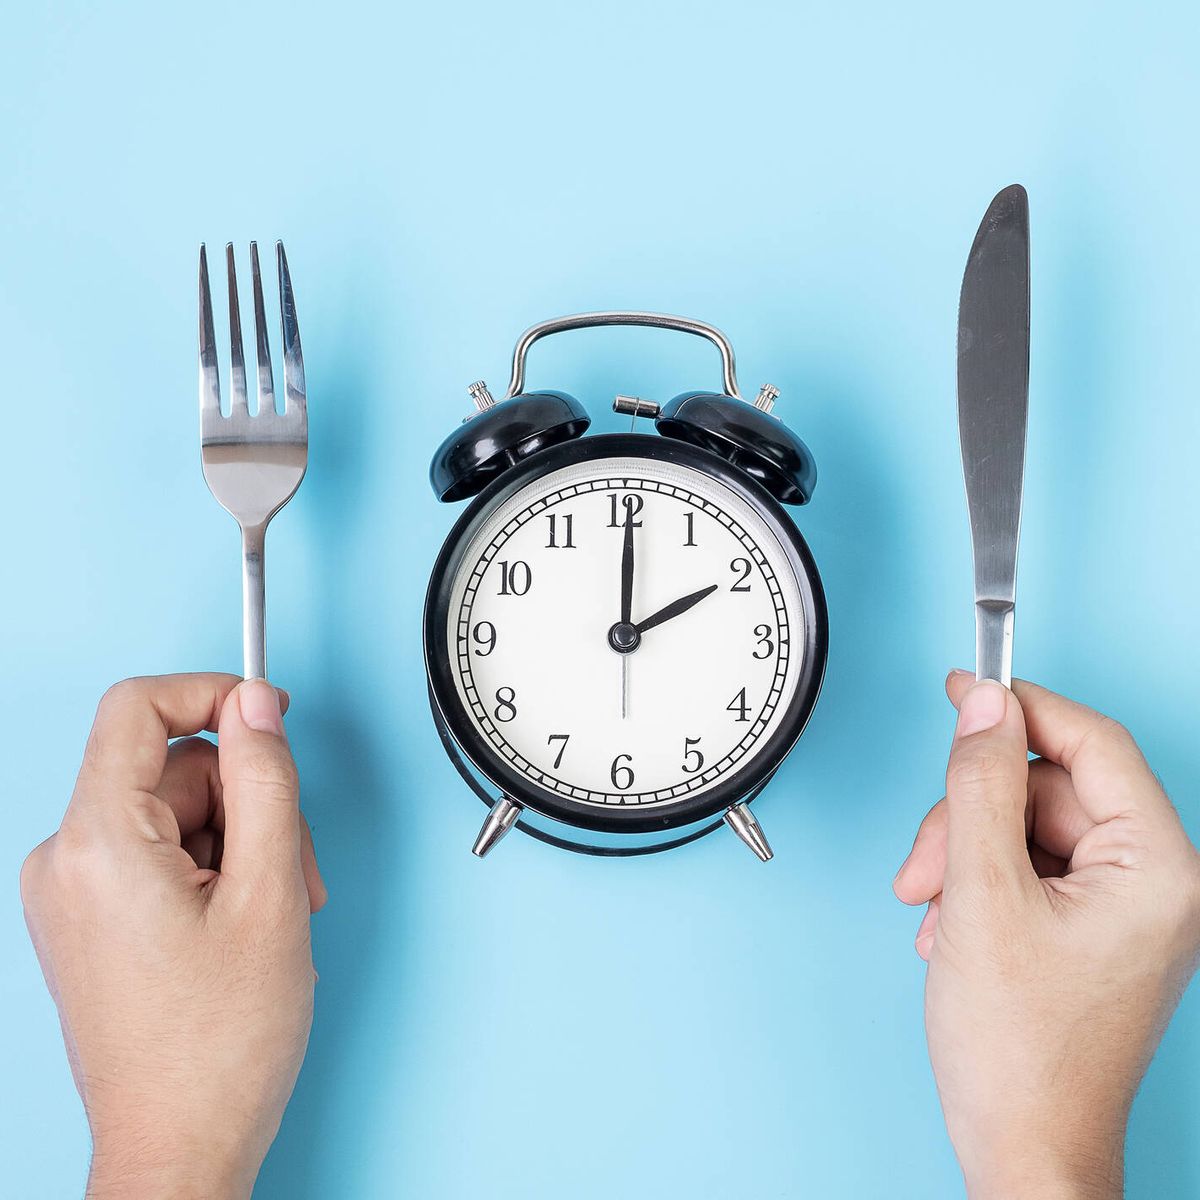 Horarios de comida, ¿indispensables para perder peso? 